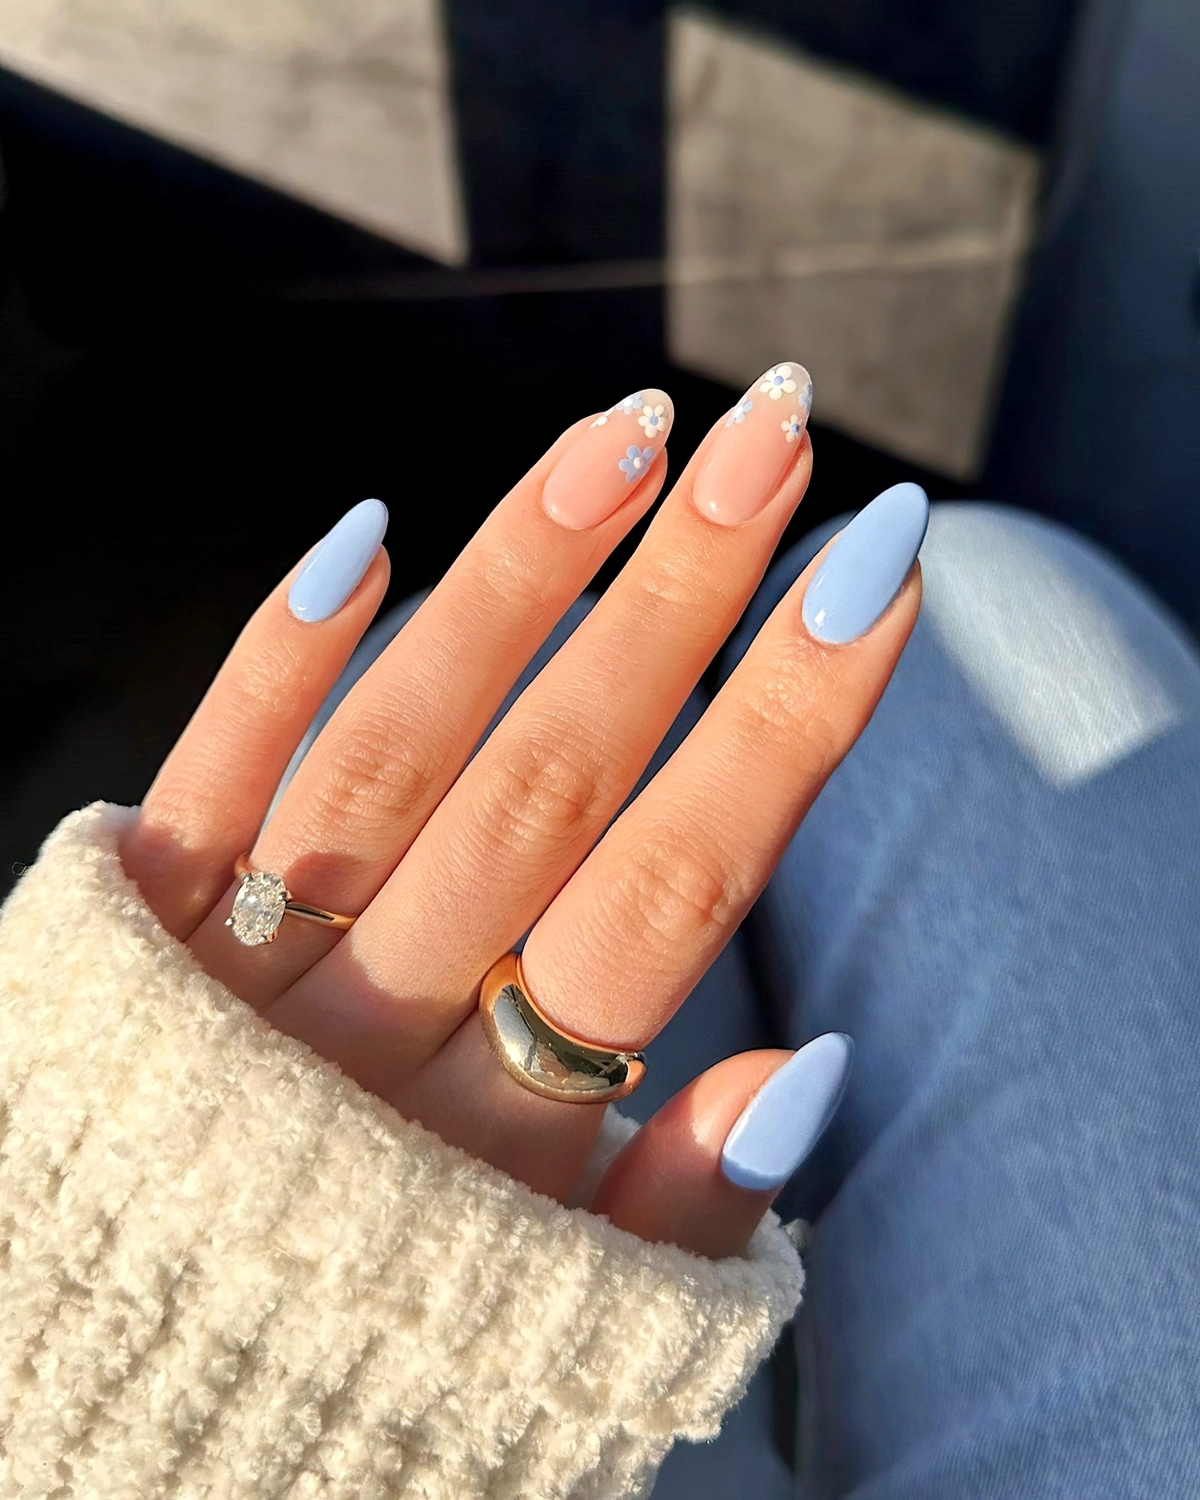 blaue fingernaegel elegantes nageldesign in babyblau heluviee